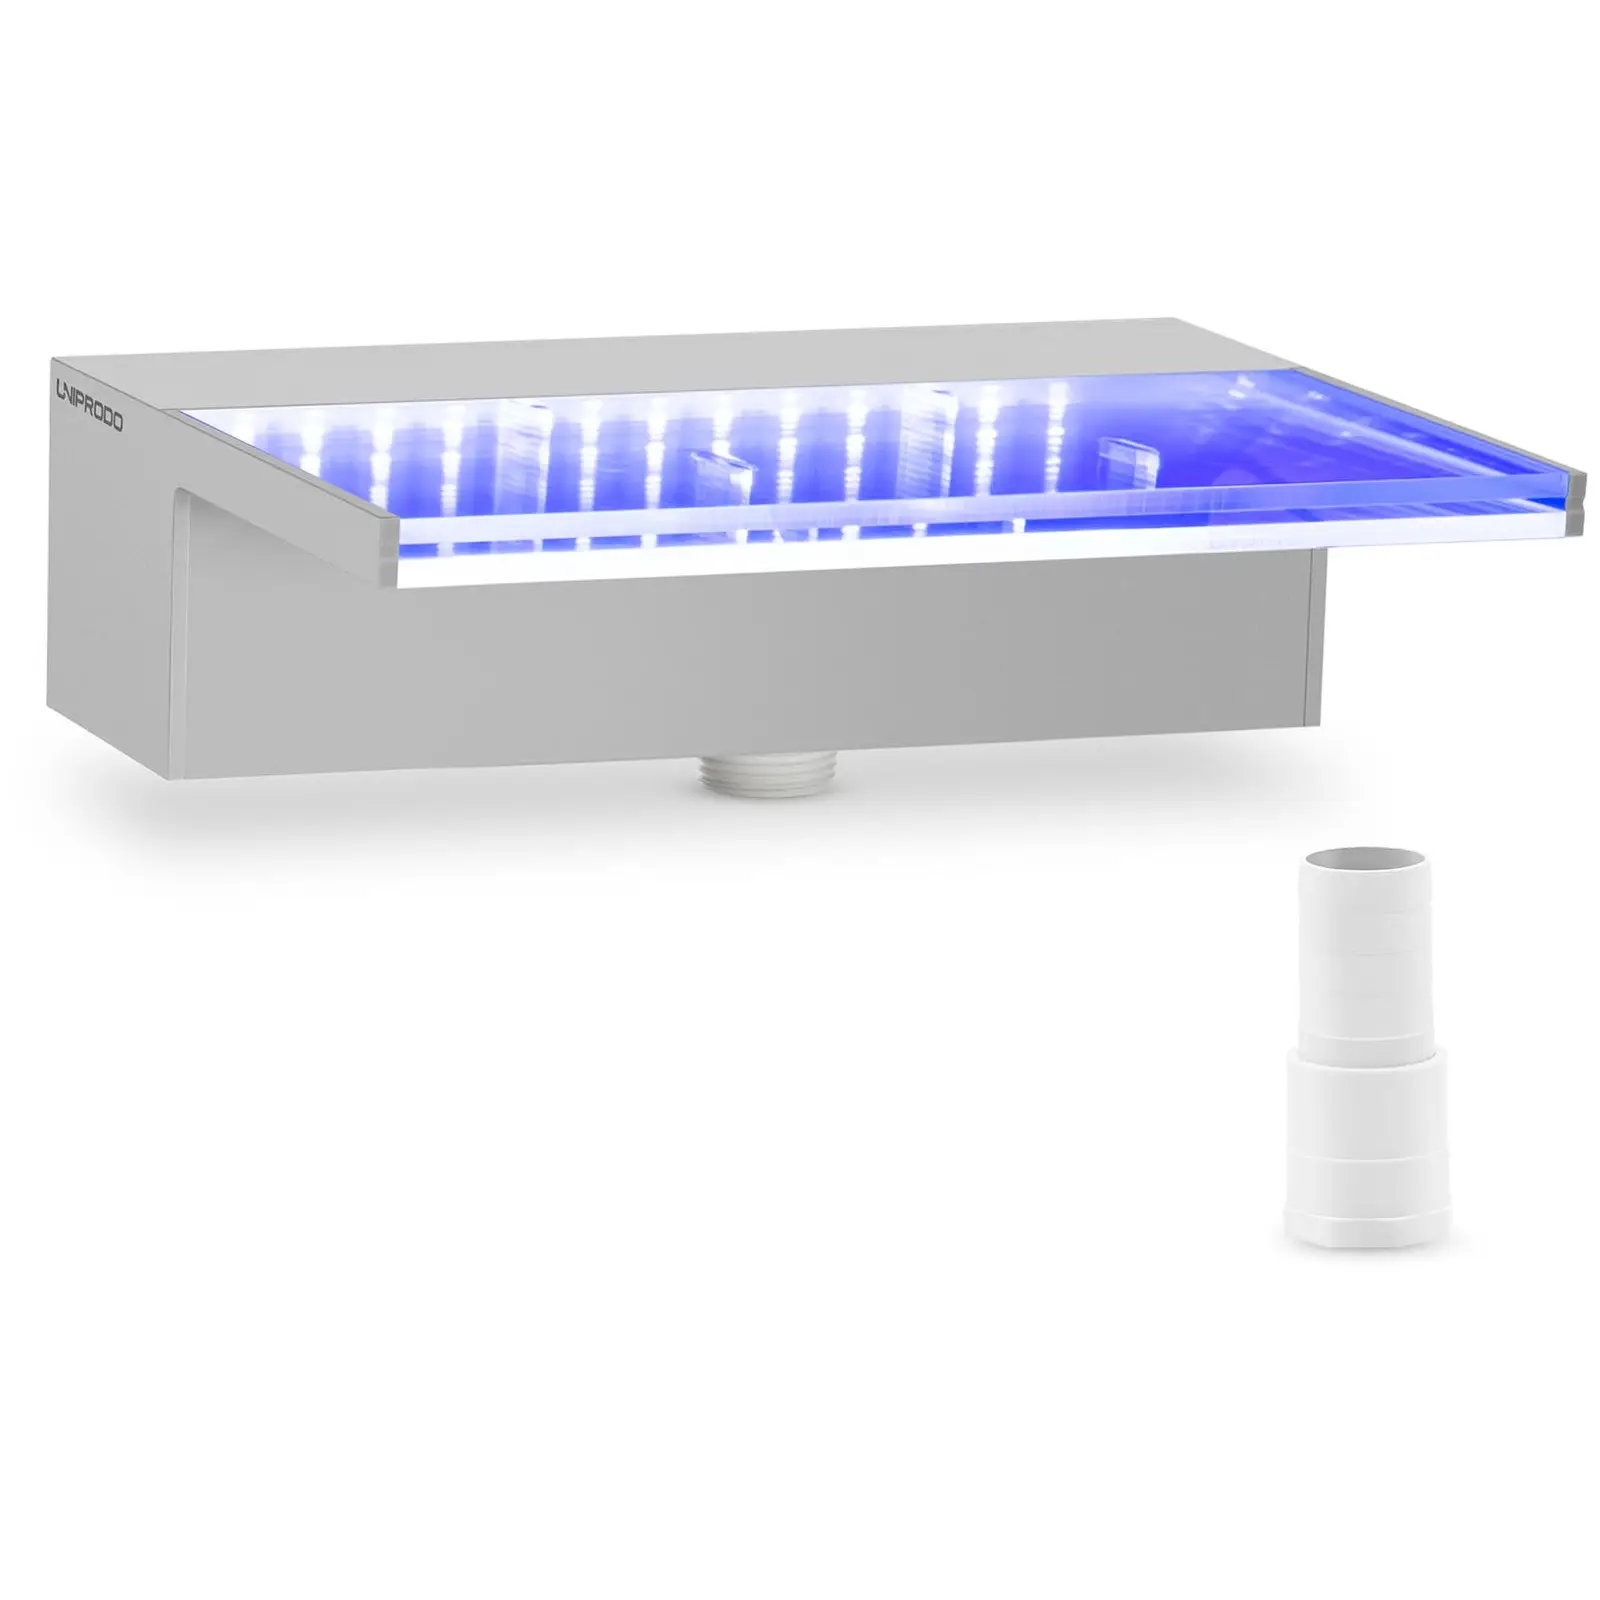 Medence szökőkút - 30 cm - LED világítás - kék/fehér - 135 mm-es vízkivezető nyílás